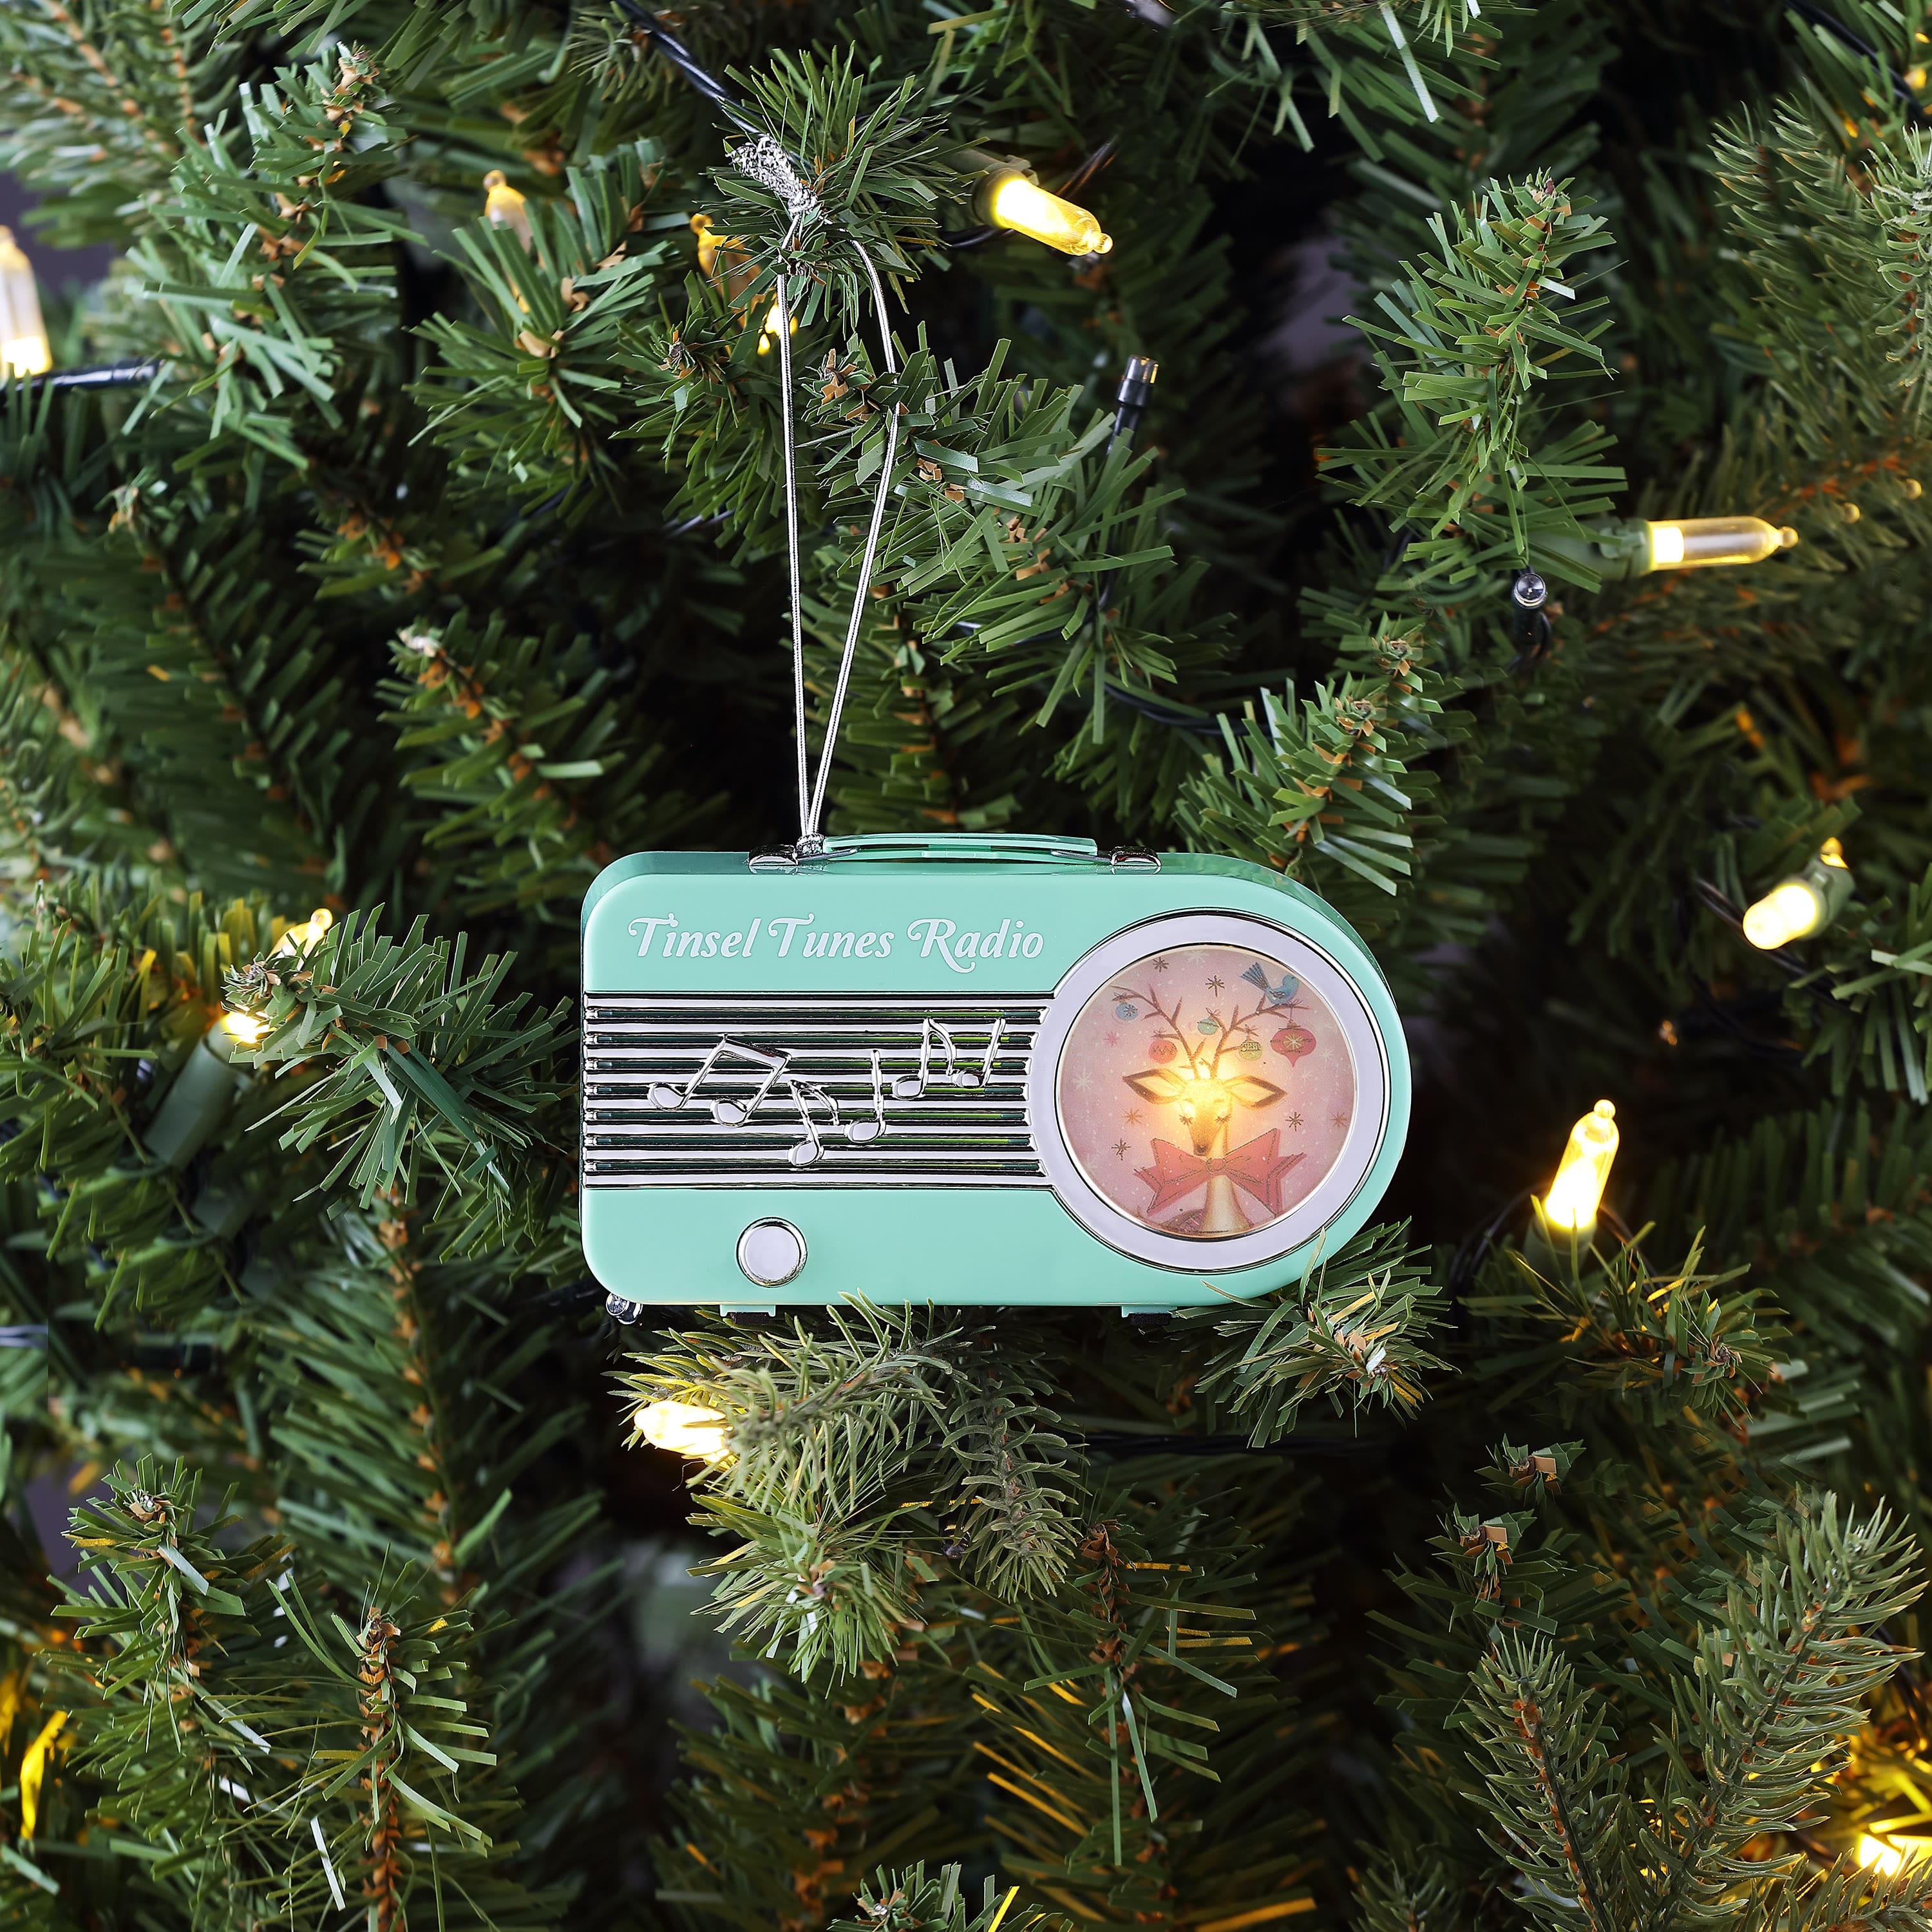 Miniature Teal Vintage Radio Ornament